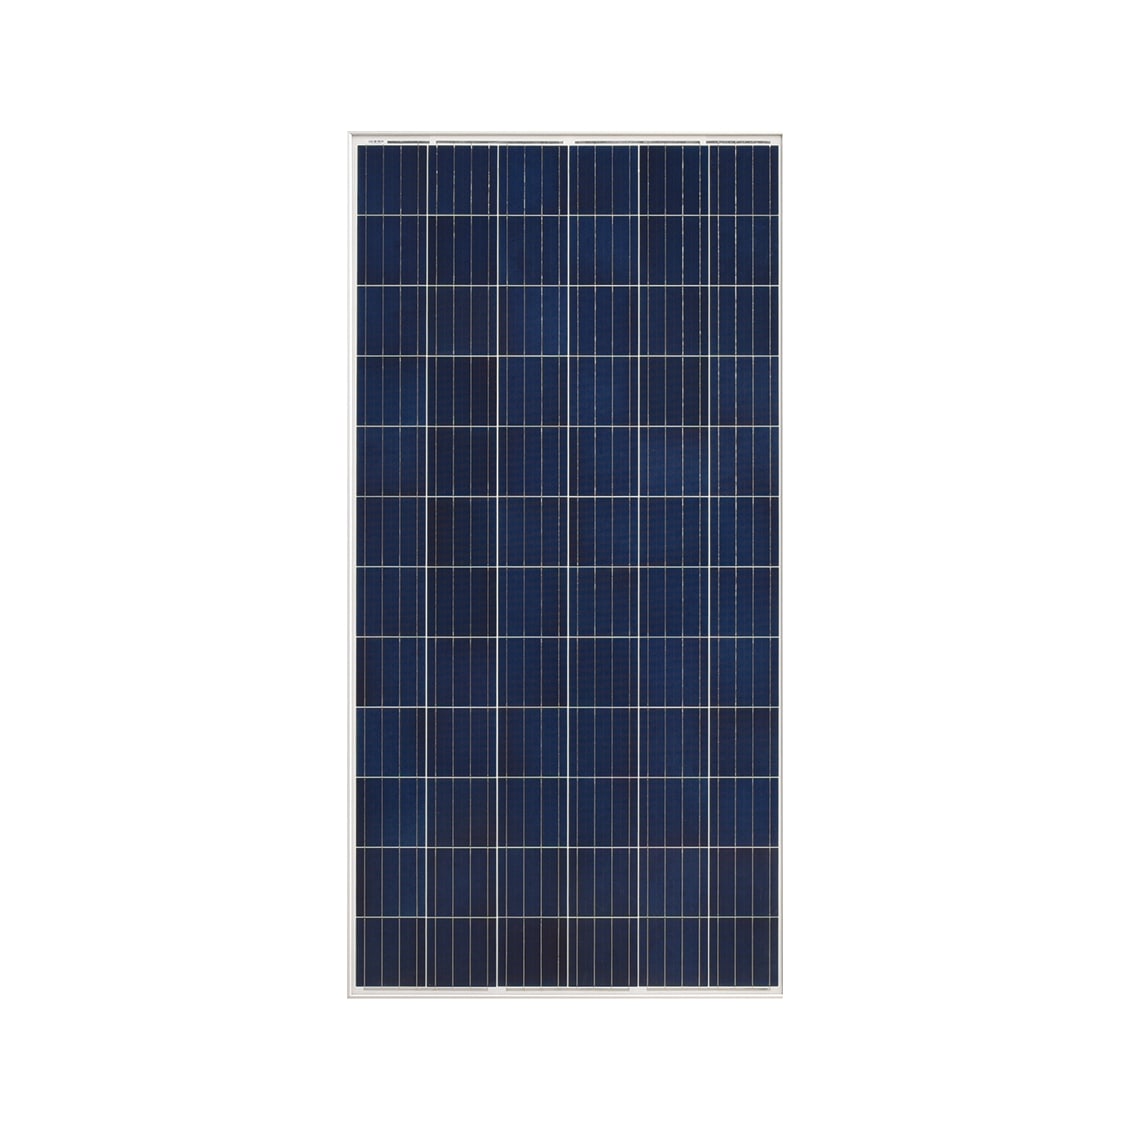 Runda Solar Photovoltaik Module monokristallin 310 W 